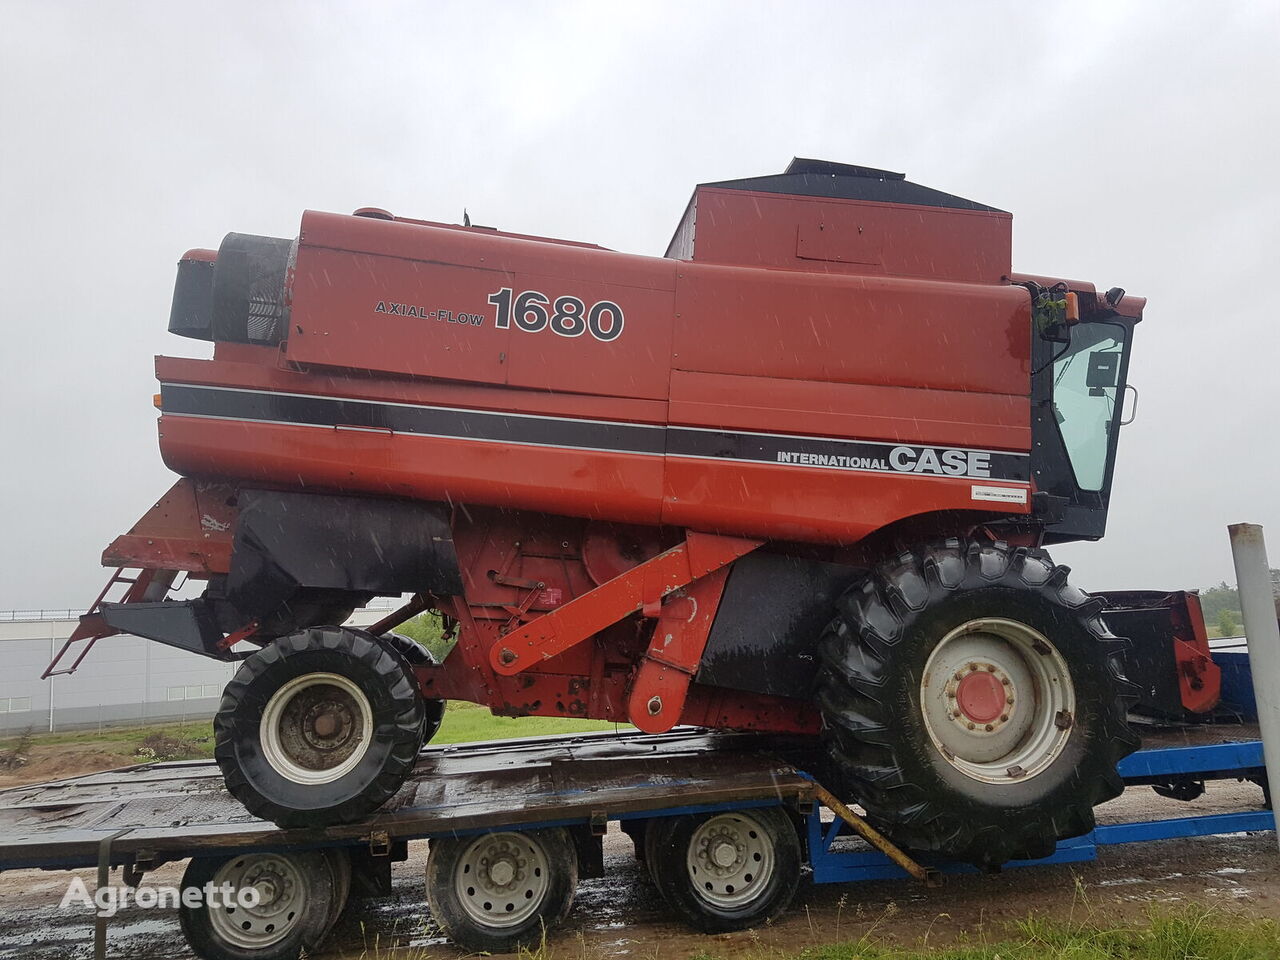 CASE IH1680 Case IH 1680 for Case IH 1680 grain harvester